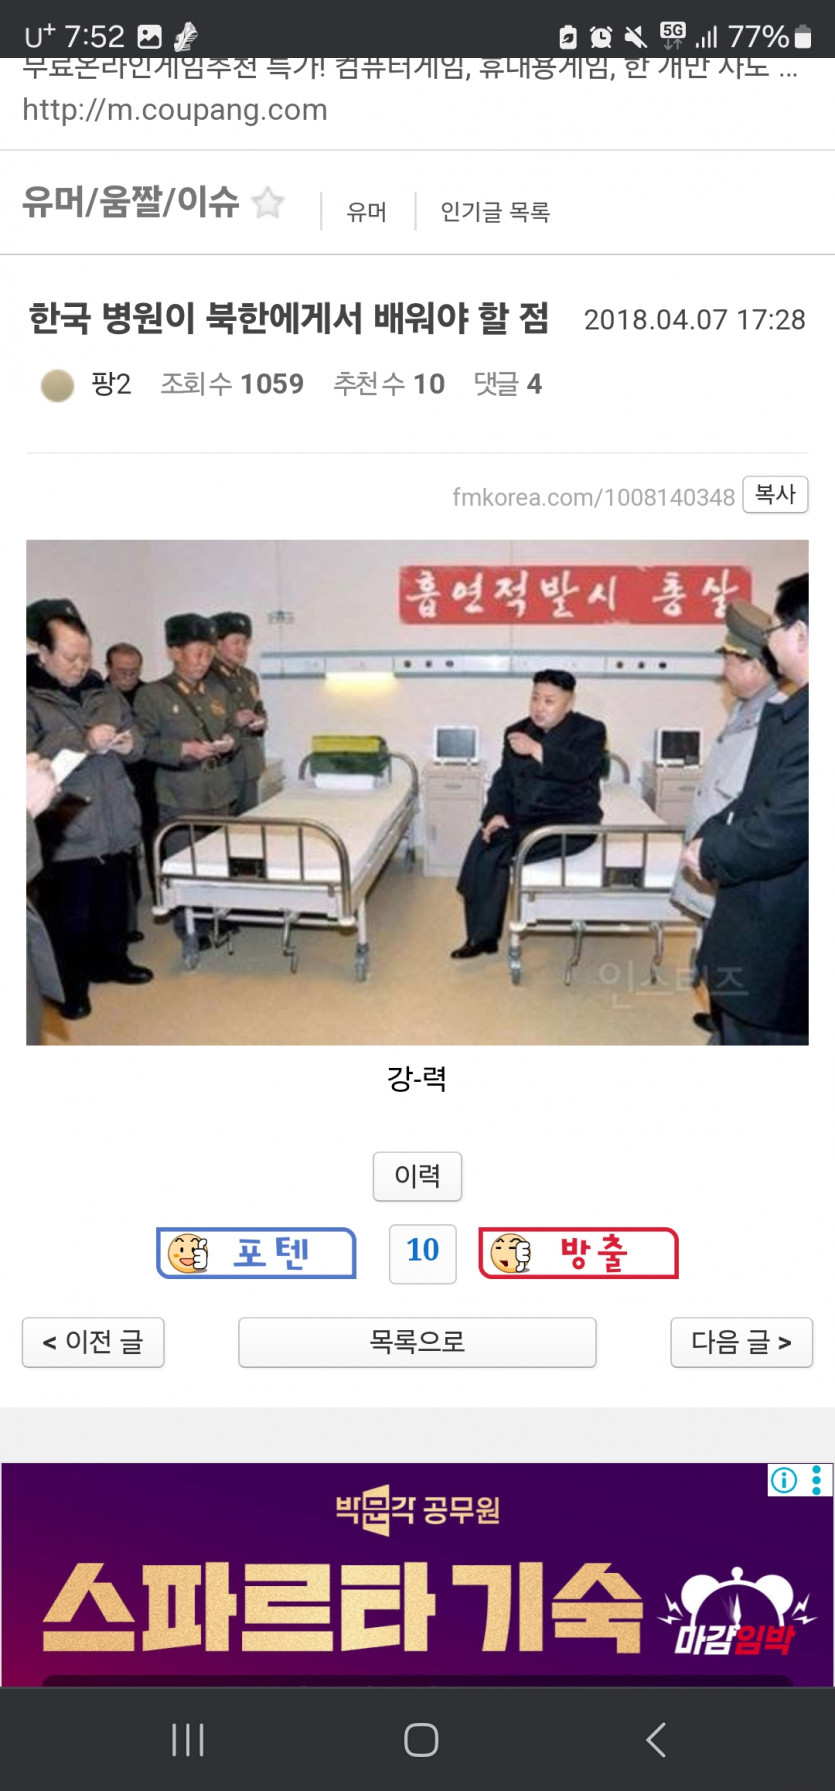 한국병원이 북한 병원에서 배워야 할점(0)